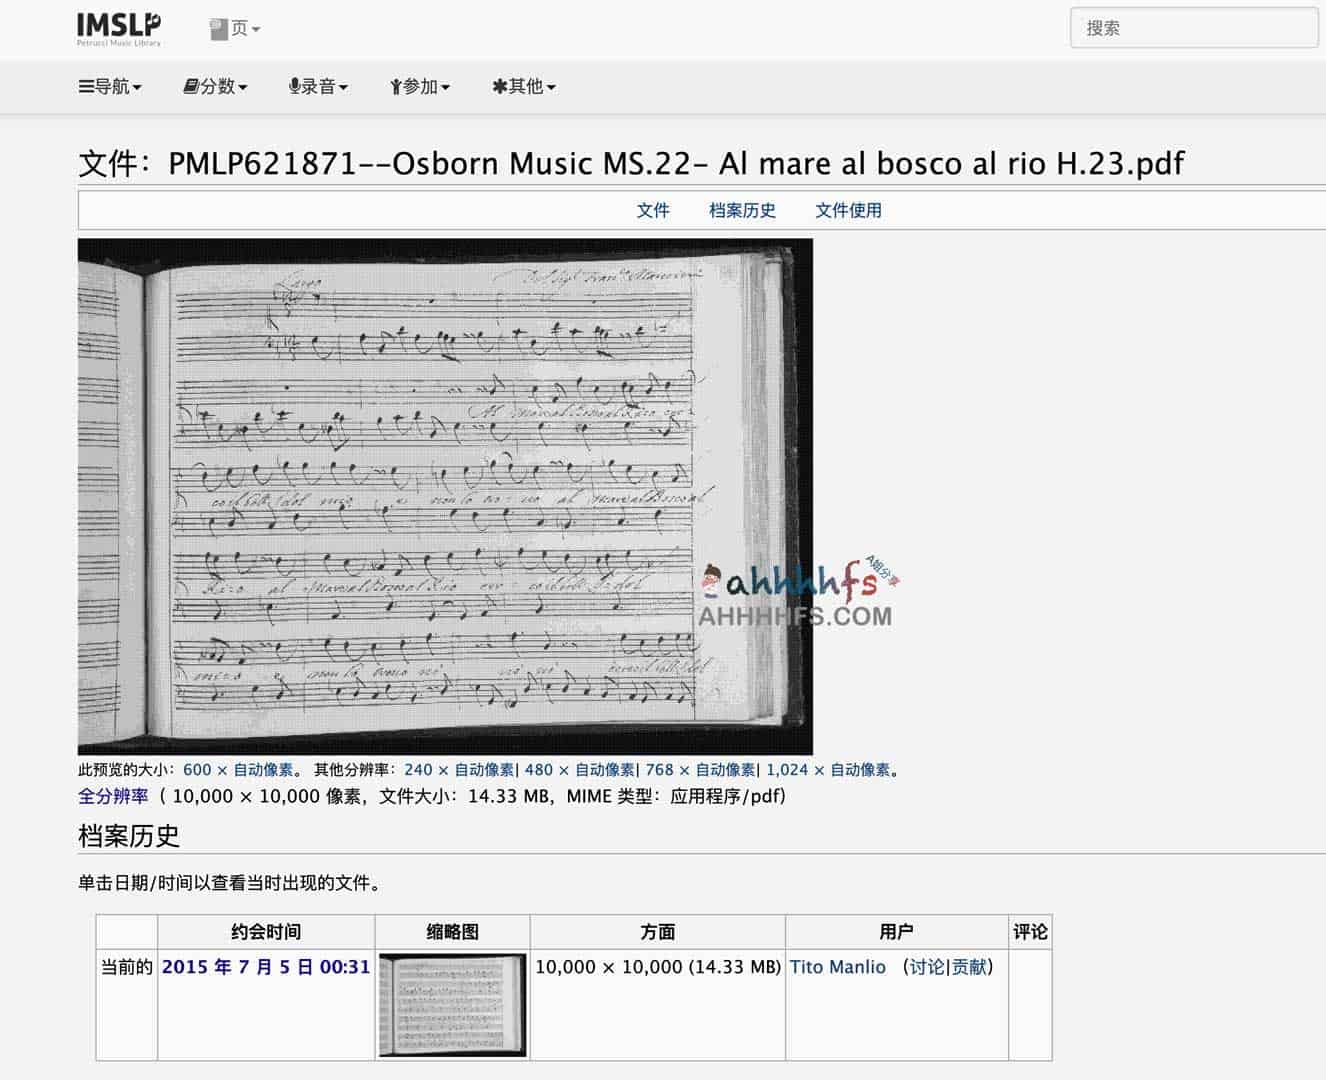 免费乐谱下载-国际音乐乐谱图书馆项目 (IMSLP)